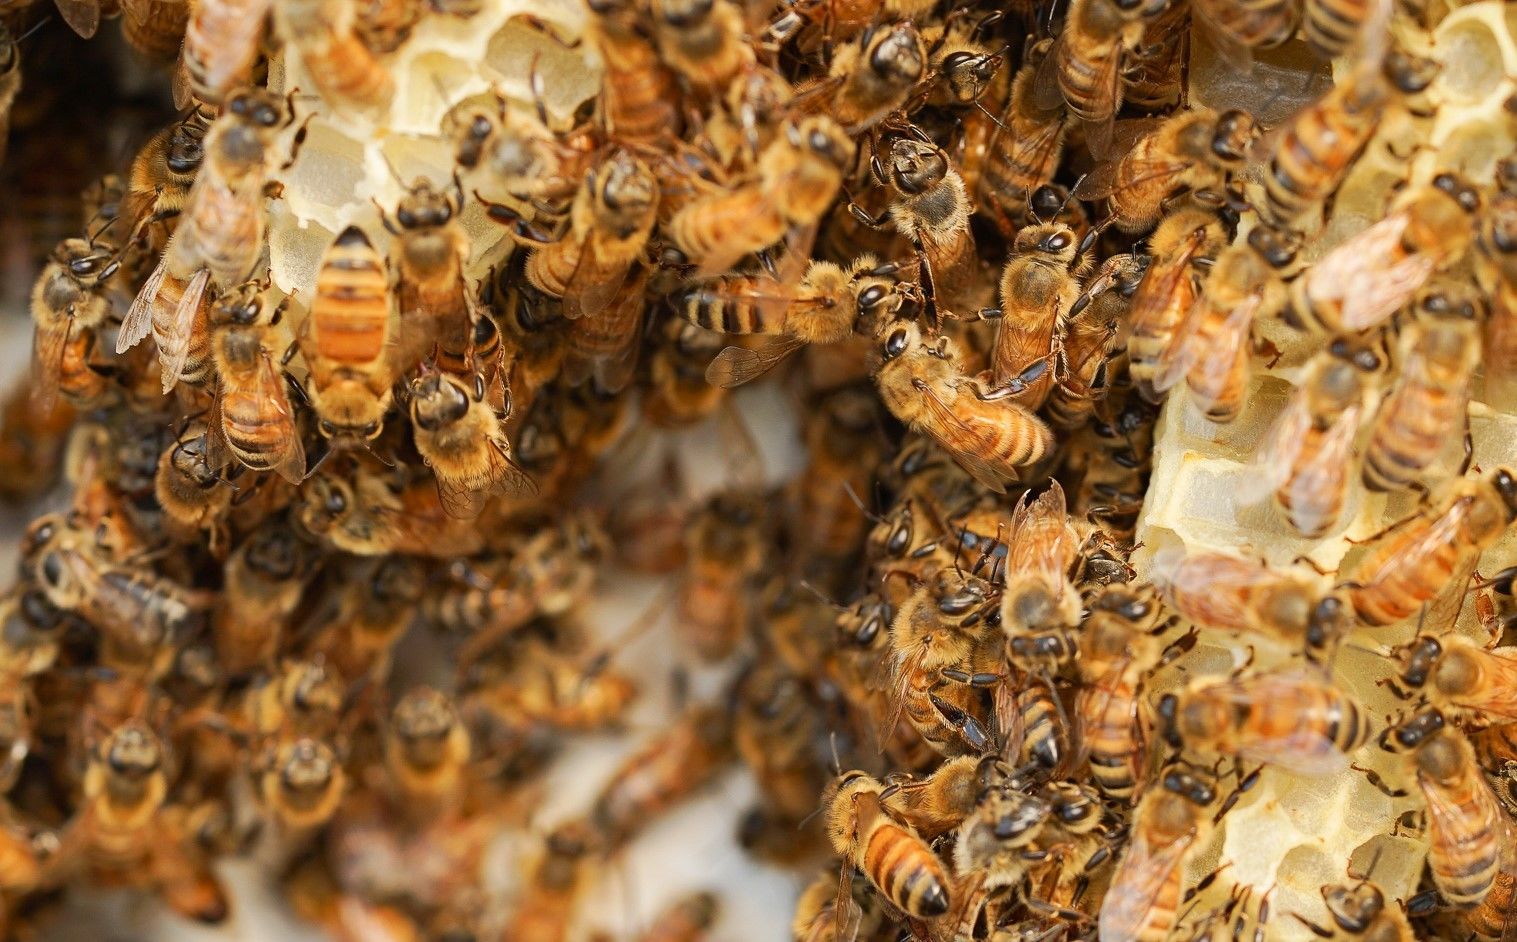 Ecrotek | How to Breed Queen Bees